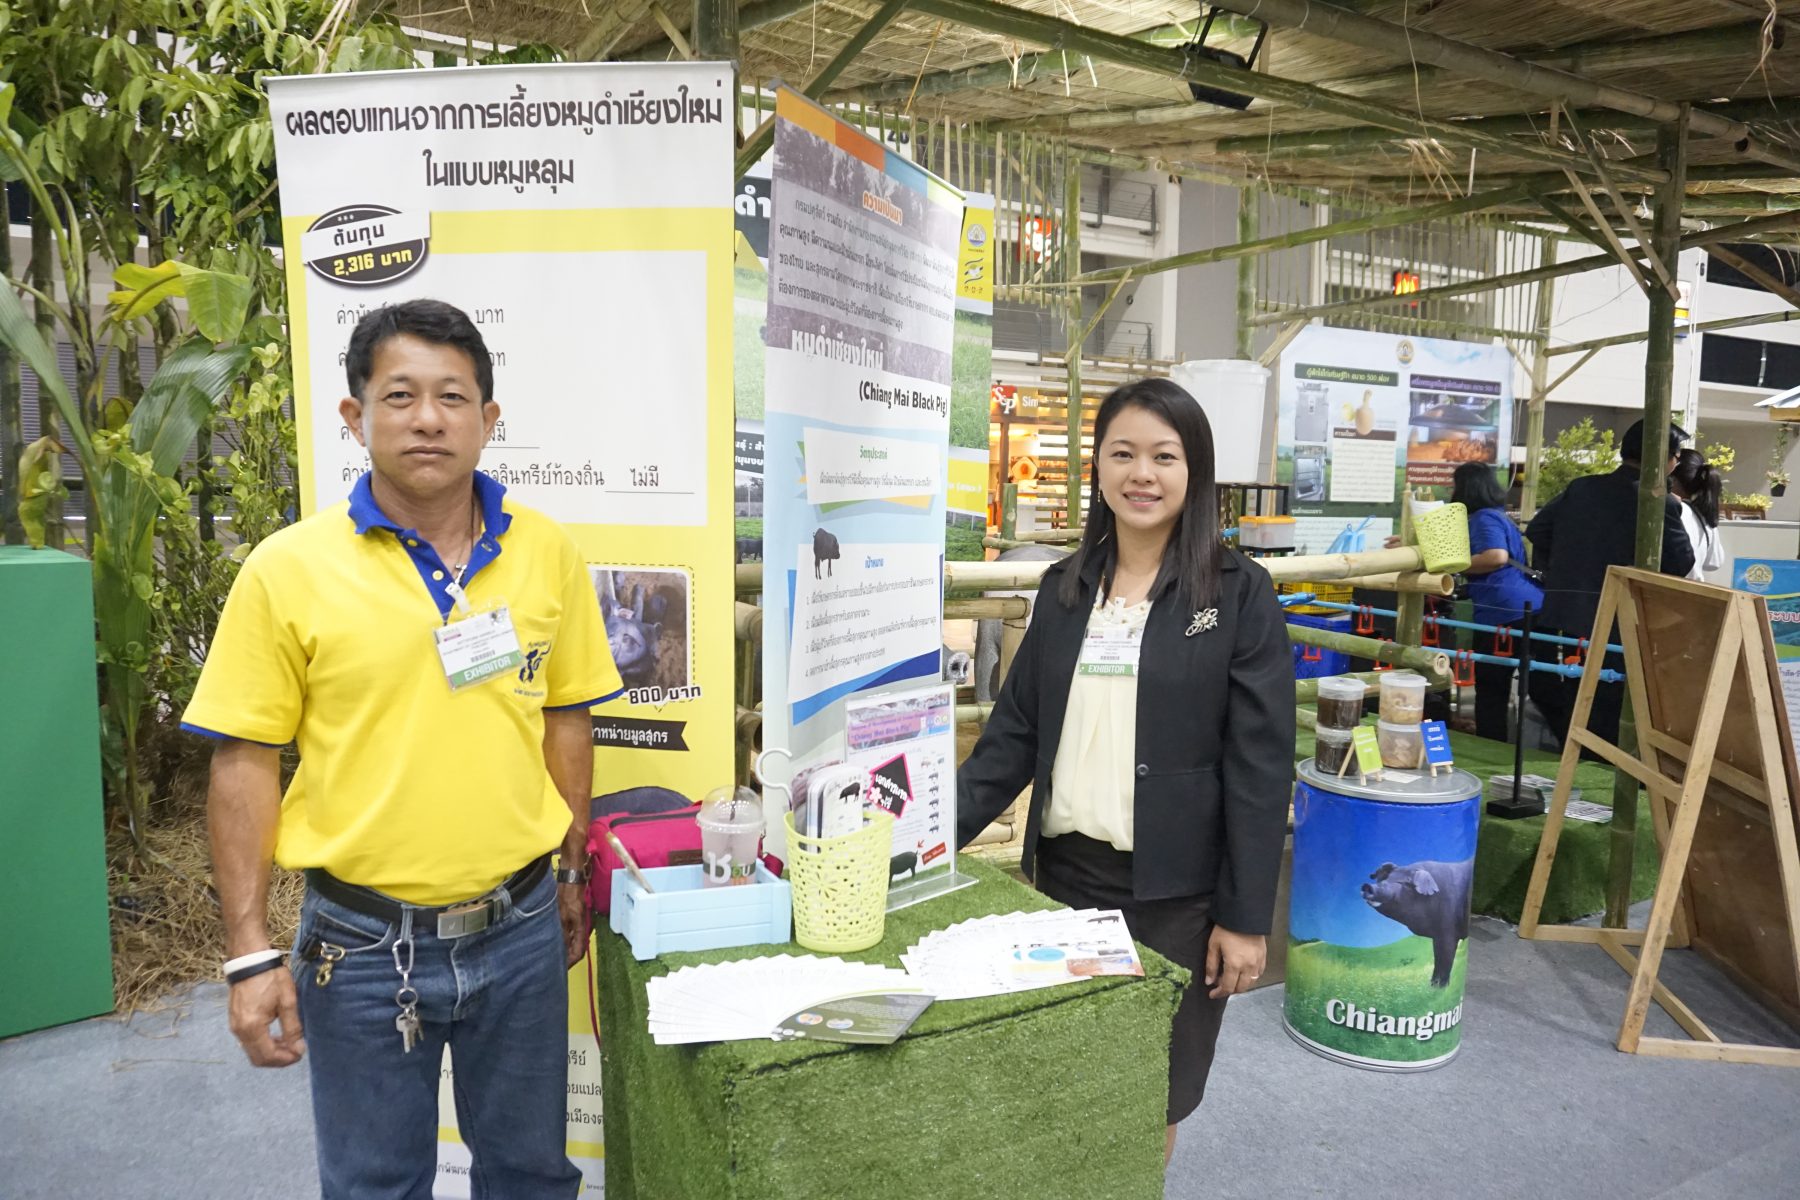 ศูนย์วิจัยและพัฒนาสุกร ร่วมจัดแสดงหมูดำเชียงใหม่ในงาน SimaAseanThailand 2018